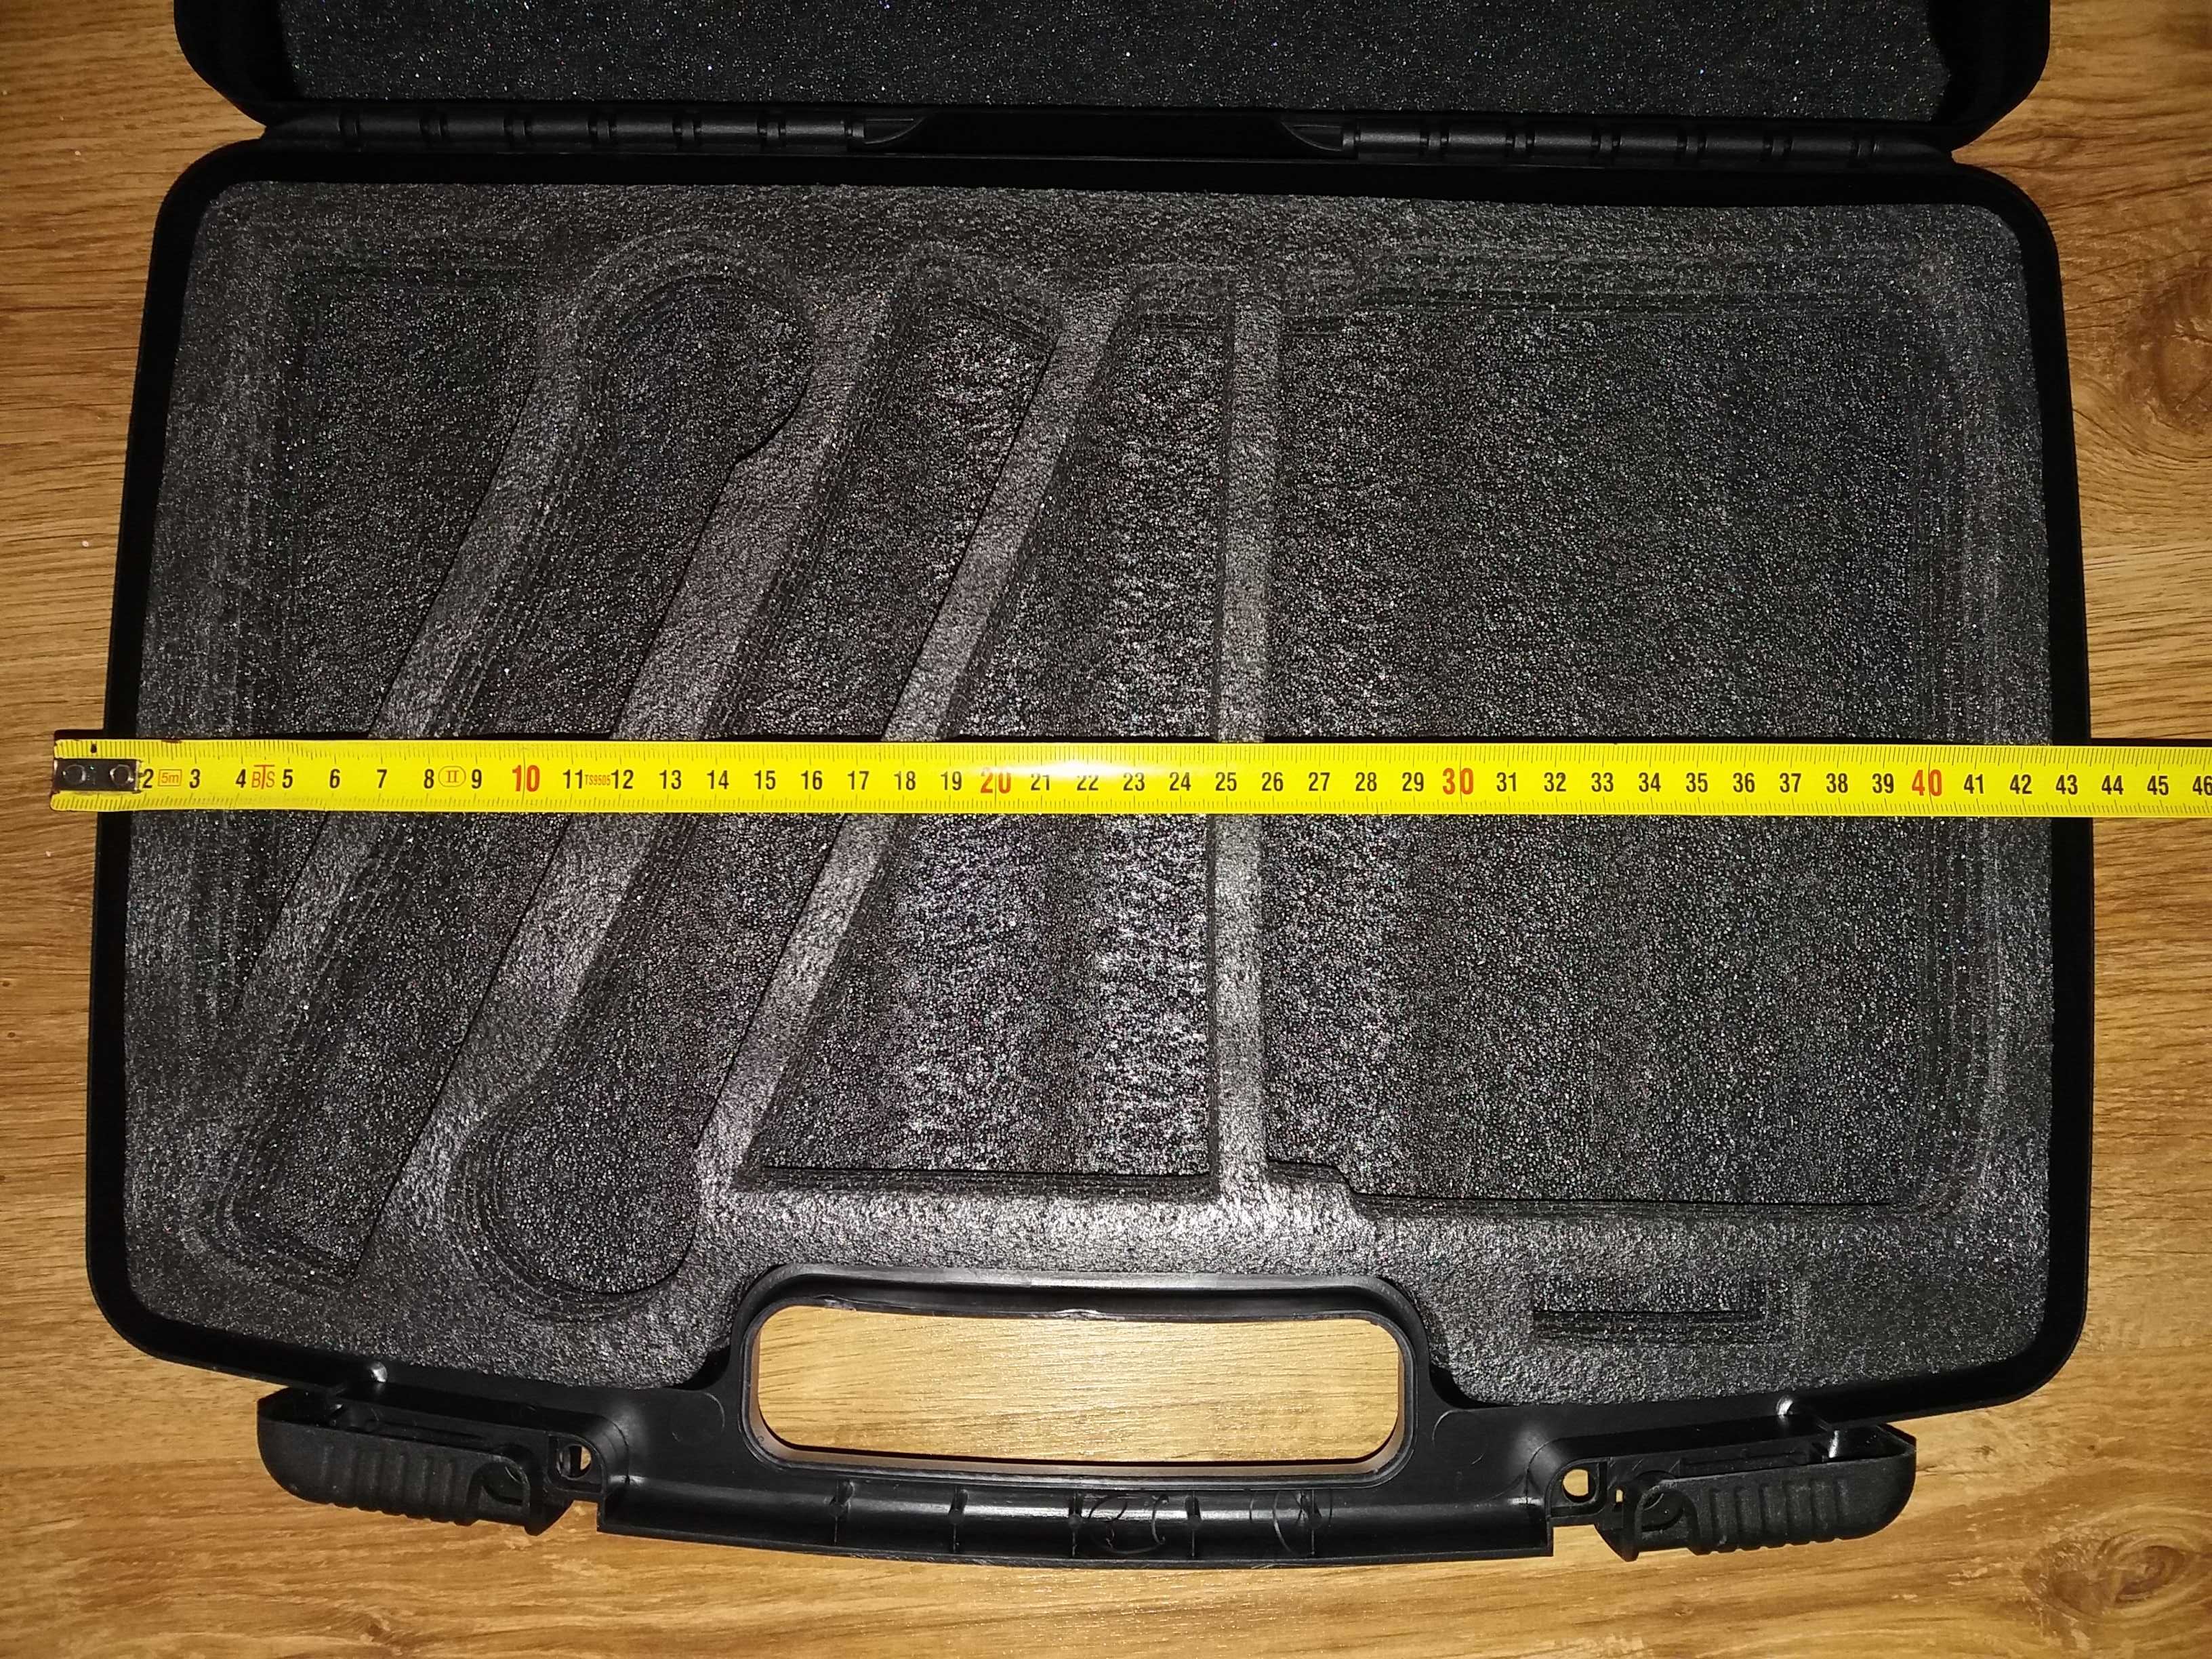 Geantă Case Valiză SHURE pentru transport microfoane profesionale